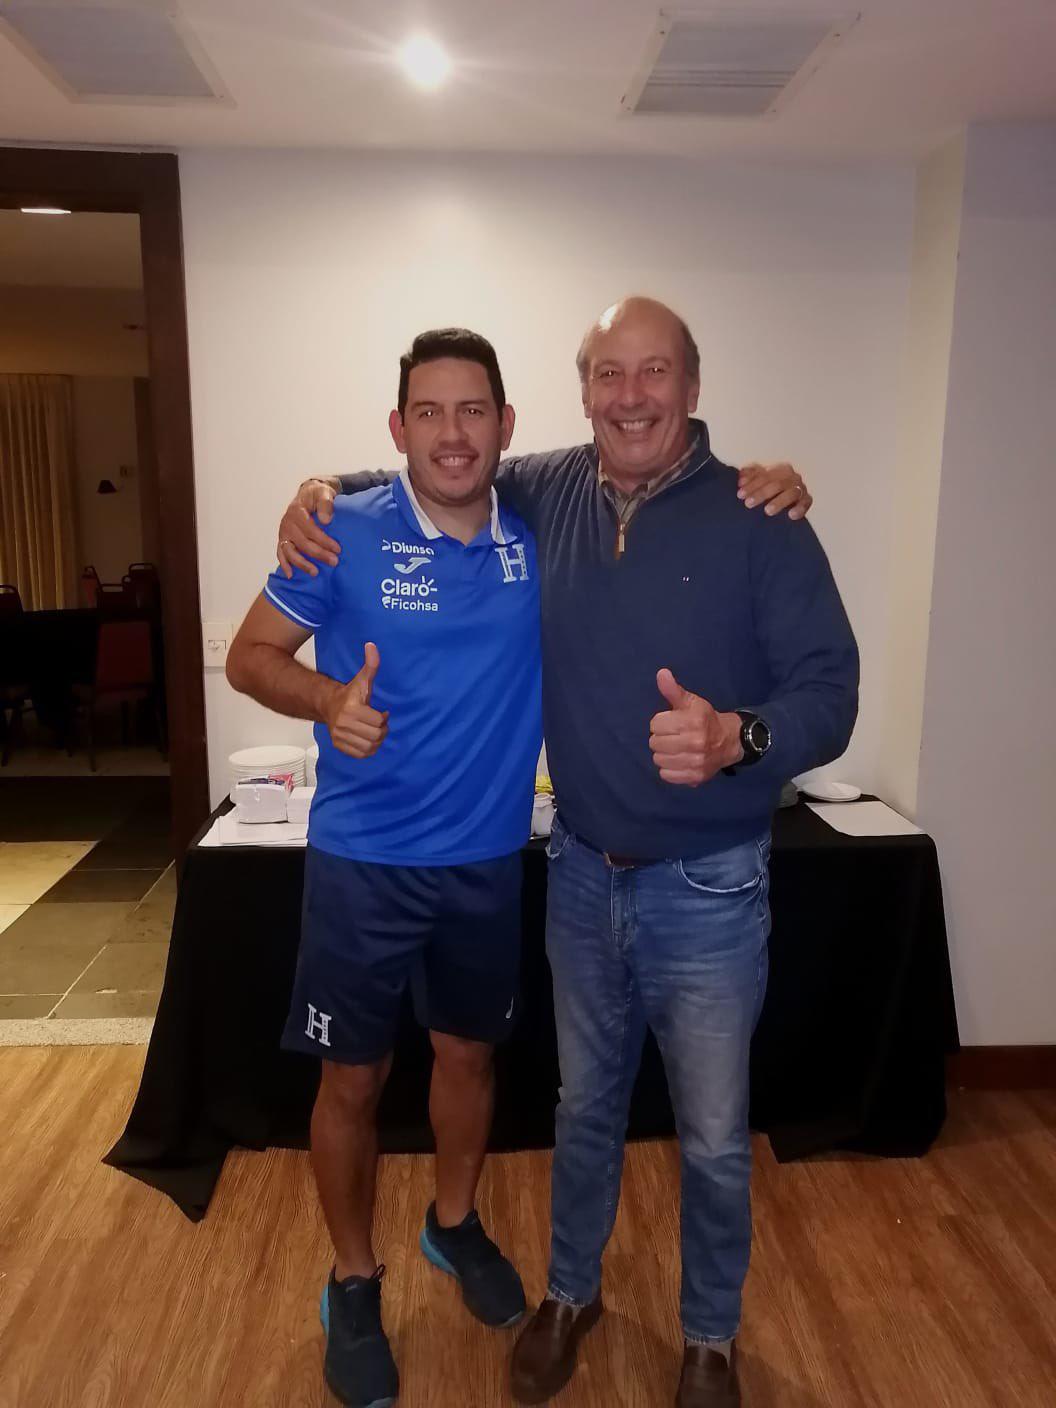 Miguel Falero reaparece y sorprende visitando a la Selección Sub-20 de Honduras en Uruguay